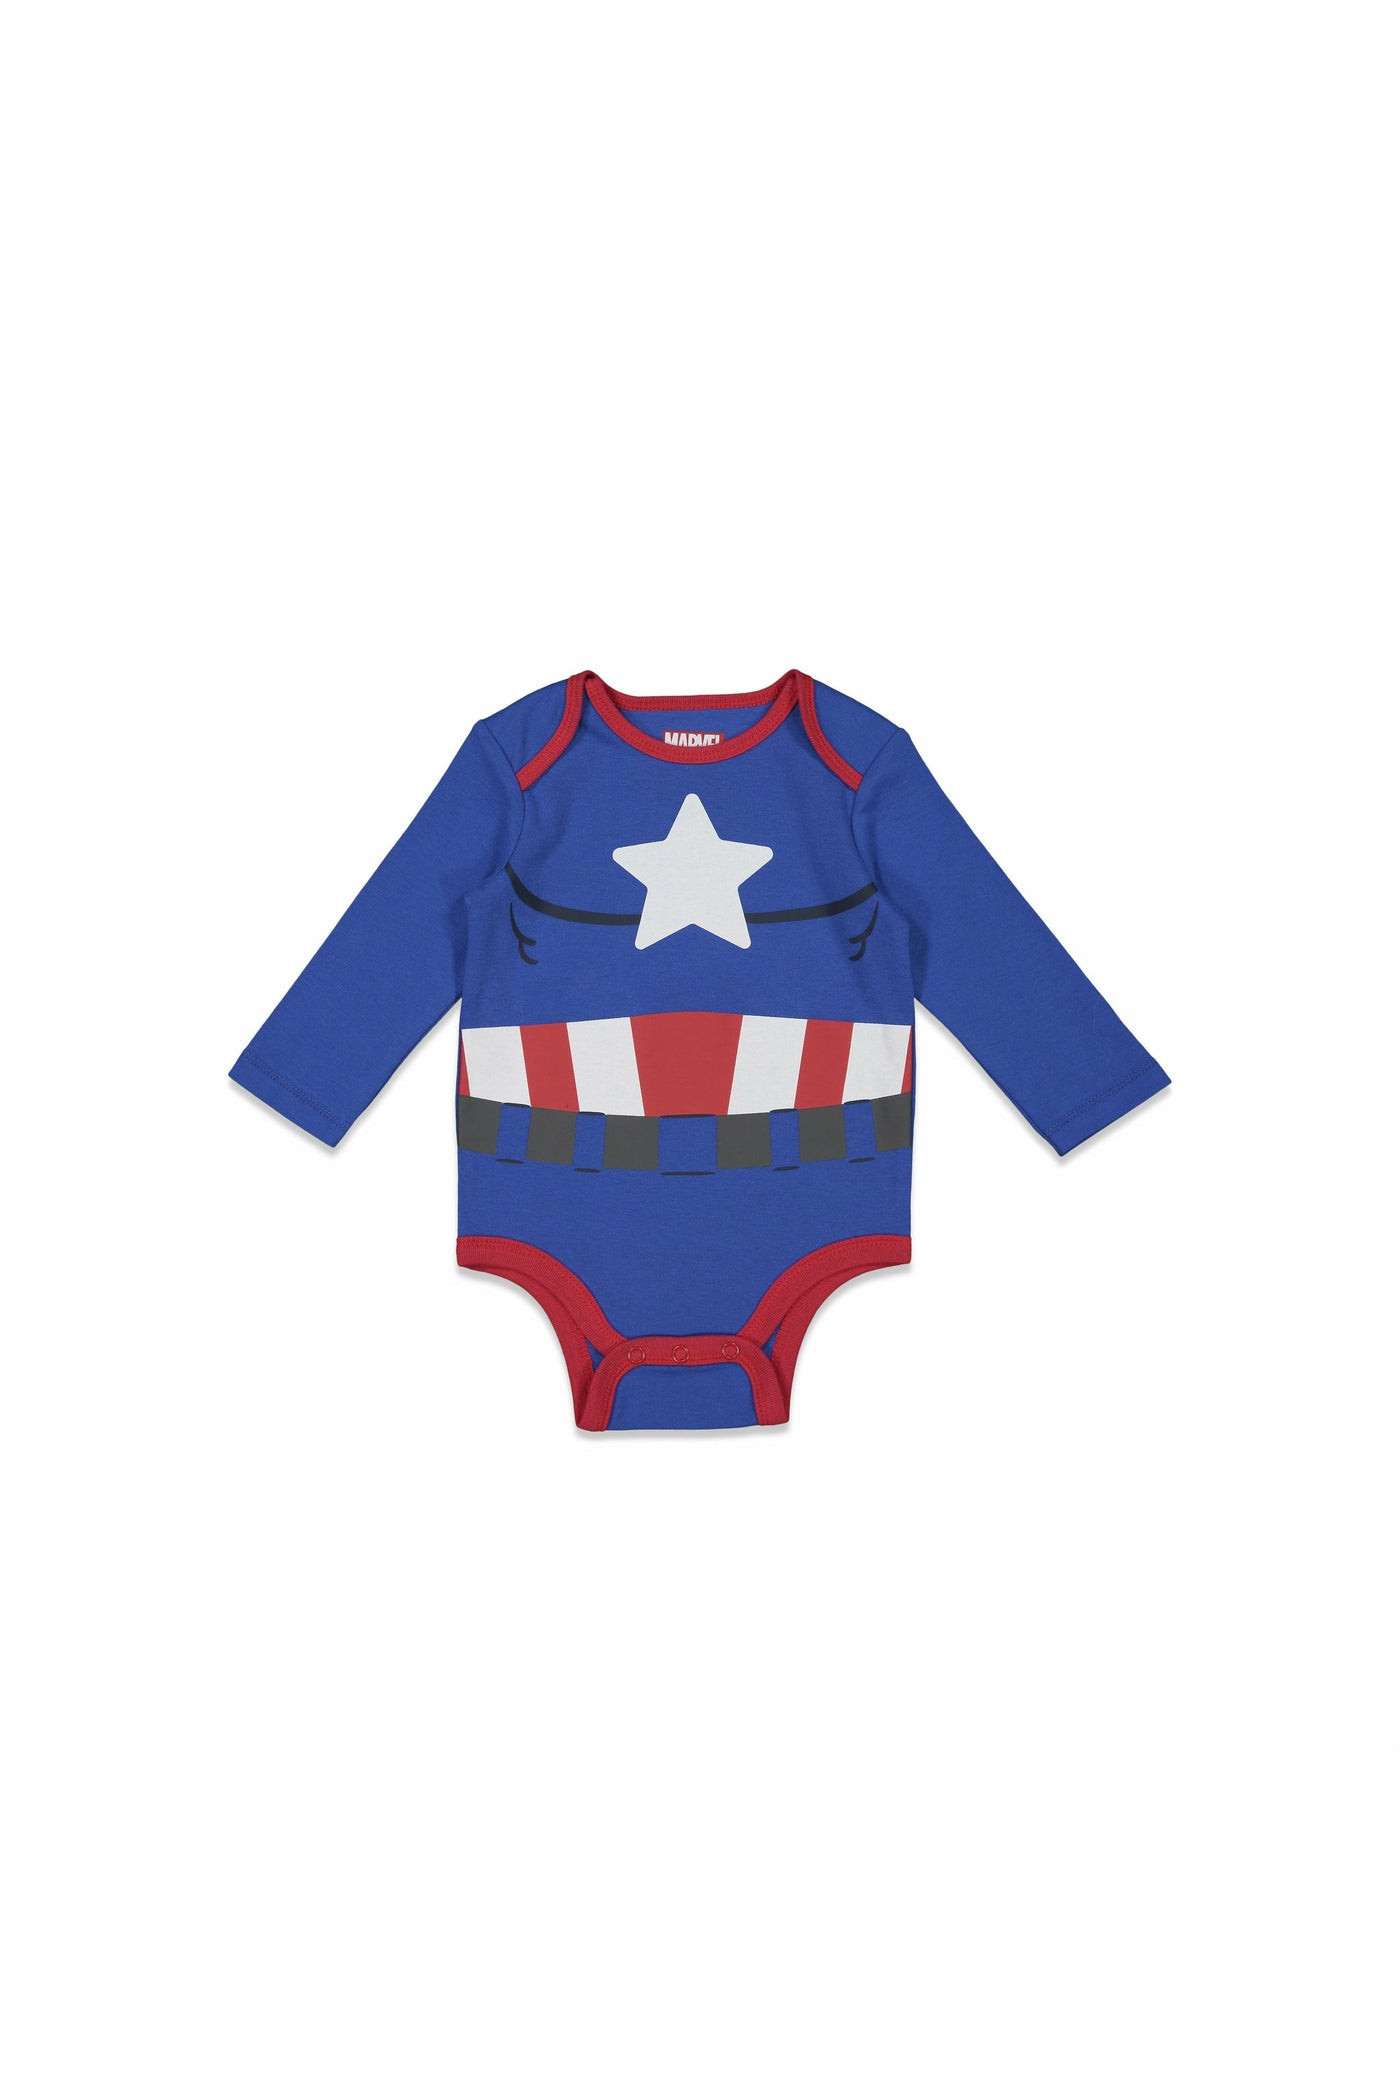 The Avengers 5 Pack Long Sleeve Bodysuit